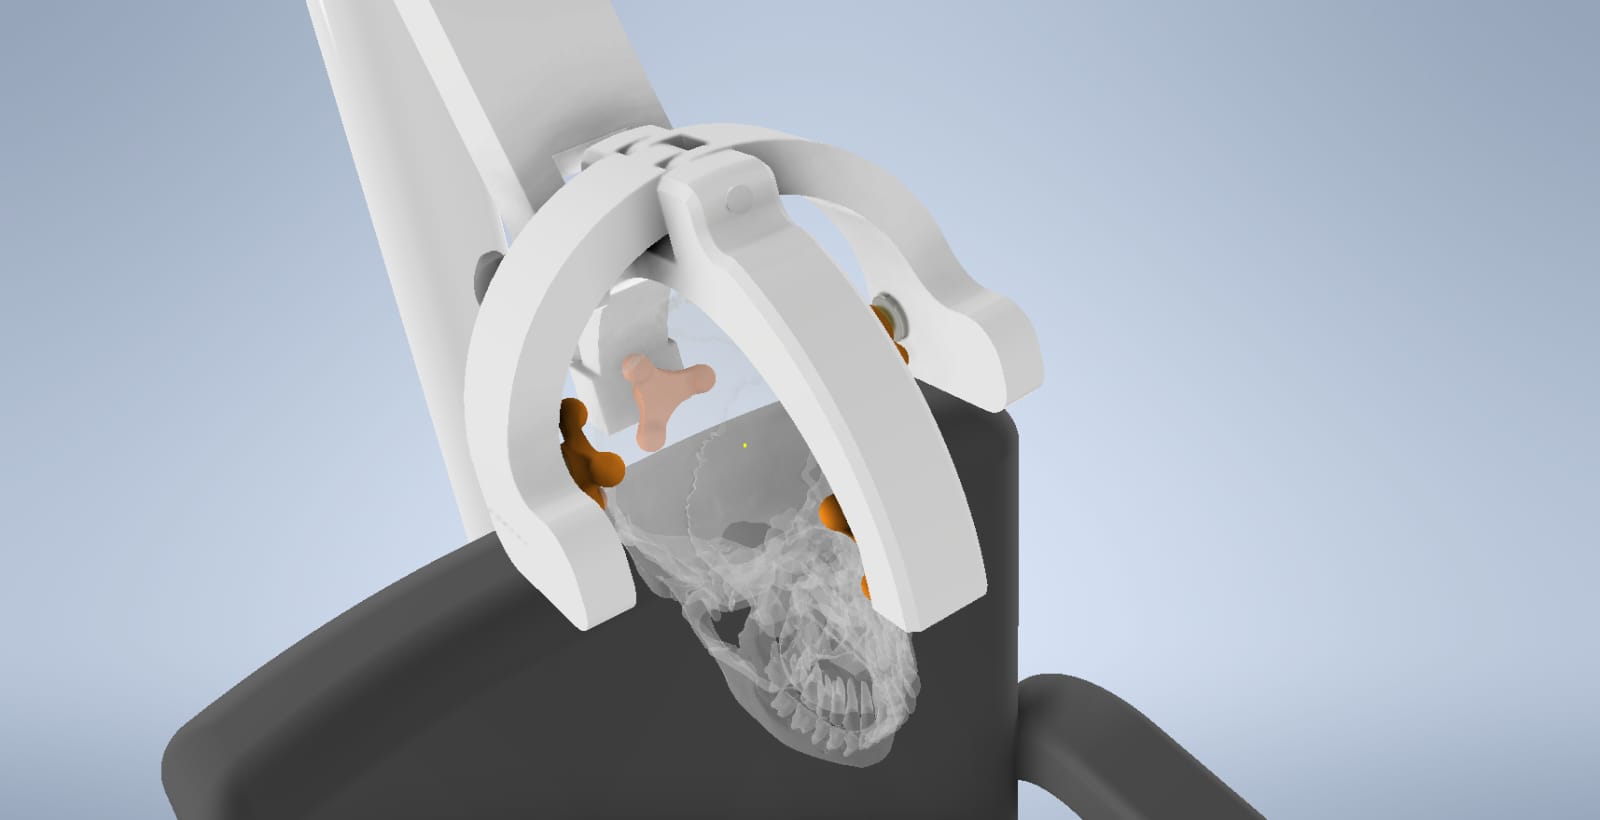 Cranial Device: il brevetto di un tarantino alla fiera internazionale WMF di Rimini